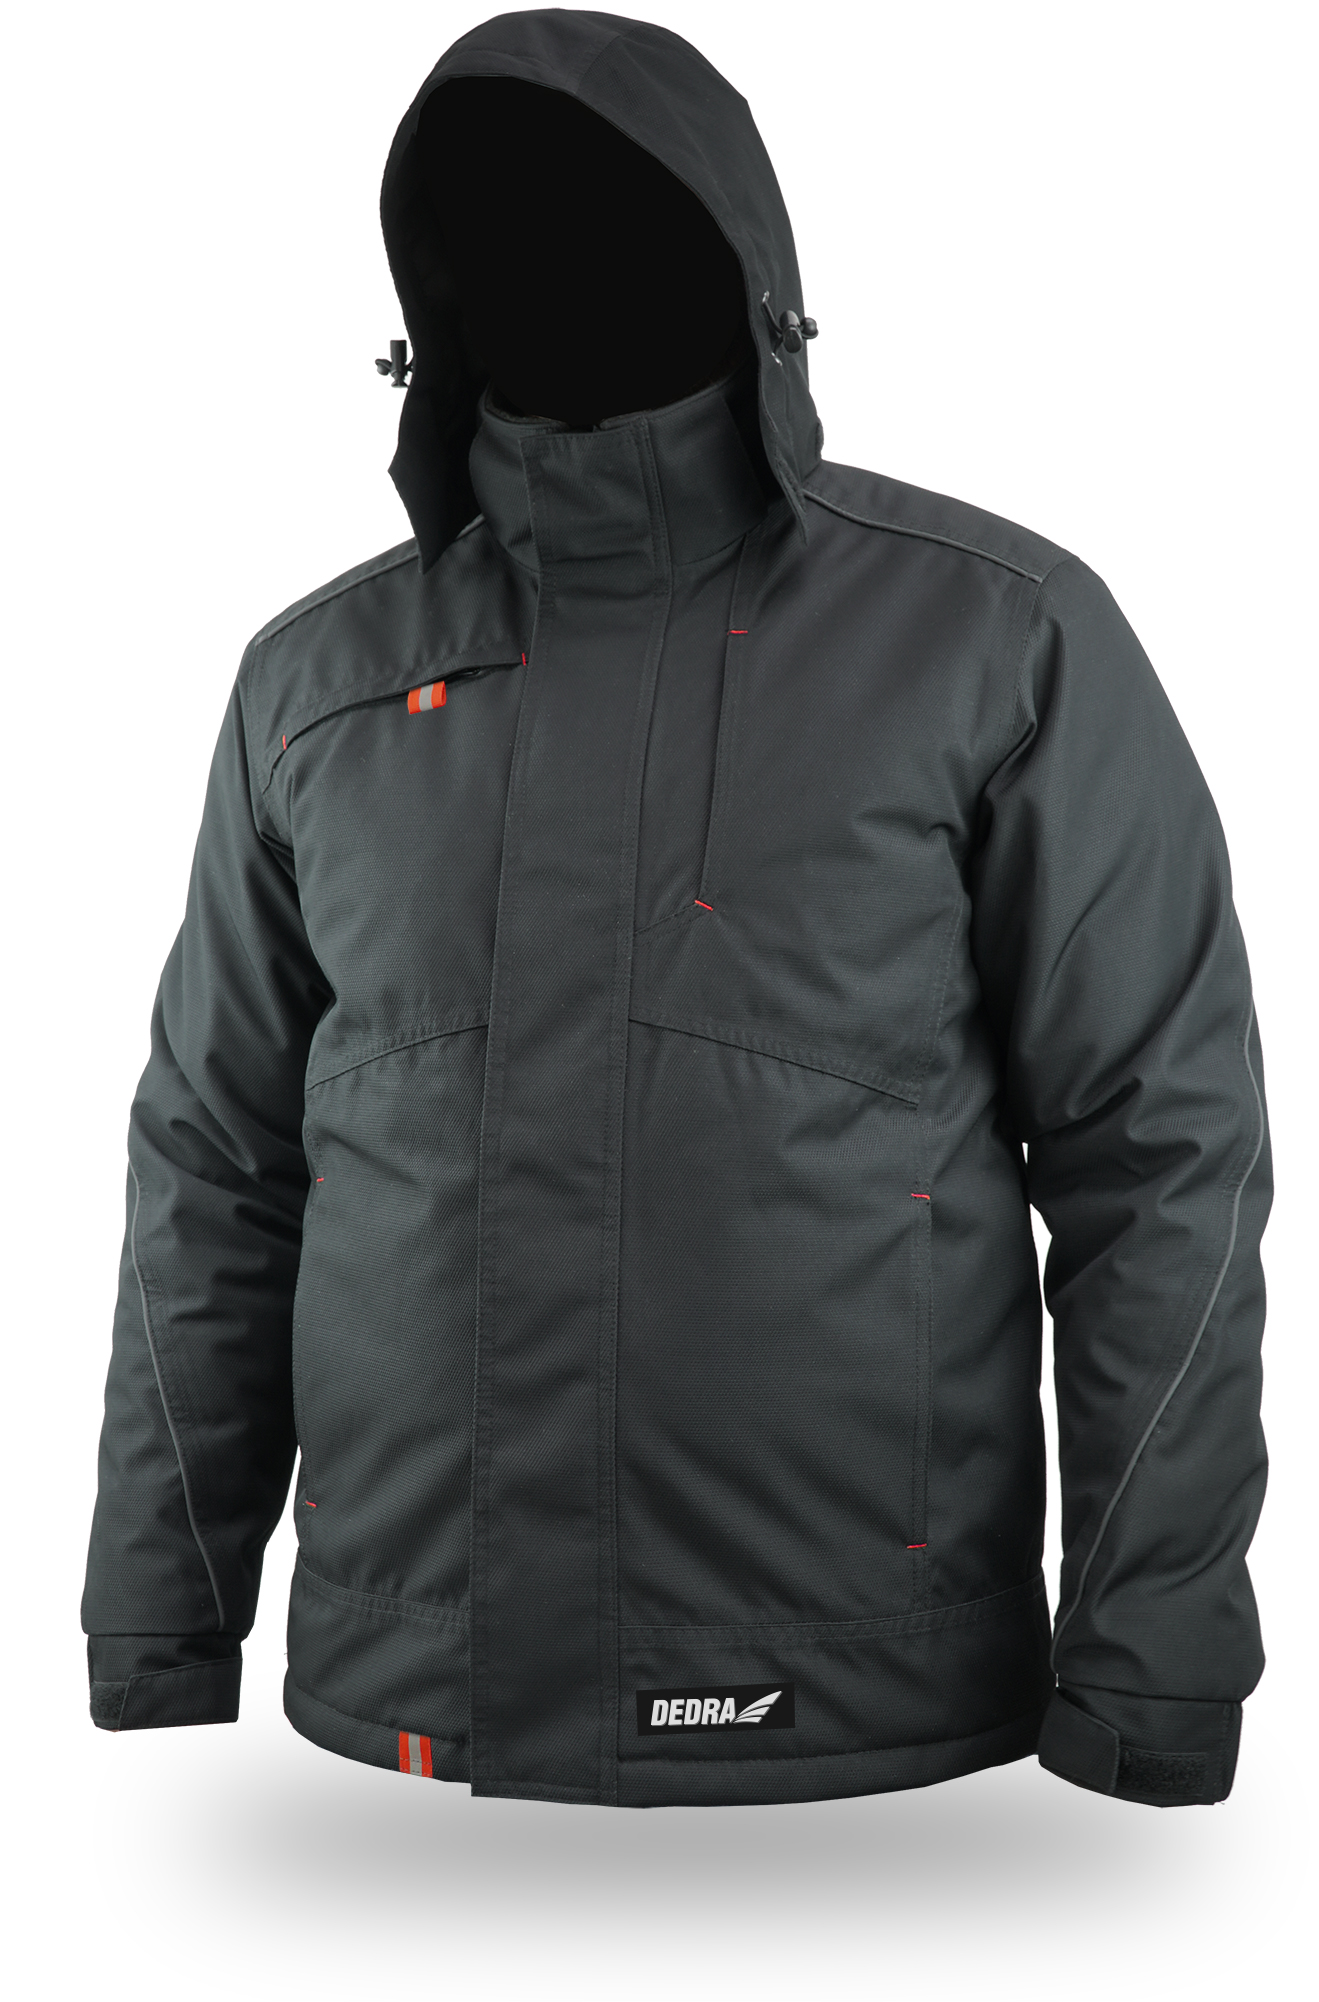 Zateplená zimní bunda, svinovací kapuce, velikost L DEDRA BH73K3-L + Dárek, servis bez starostí v hodnotě 300Kč